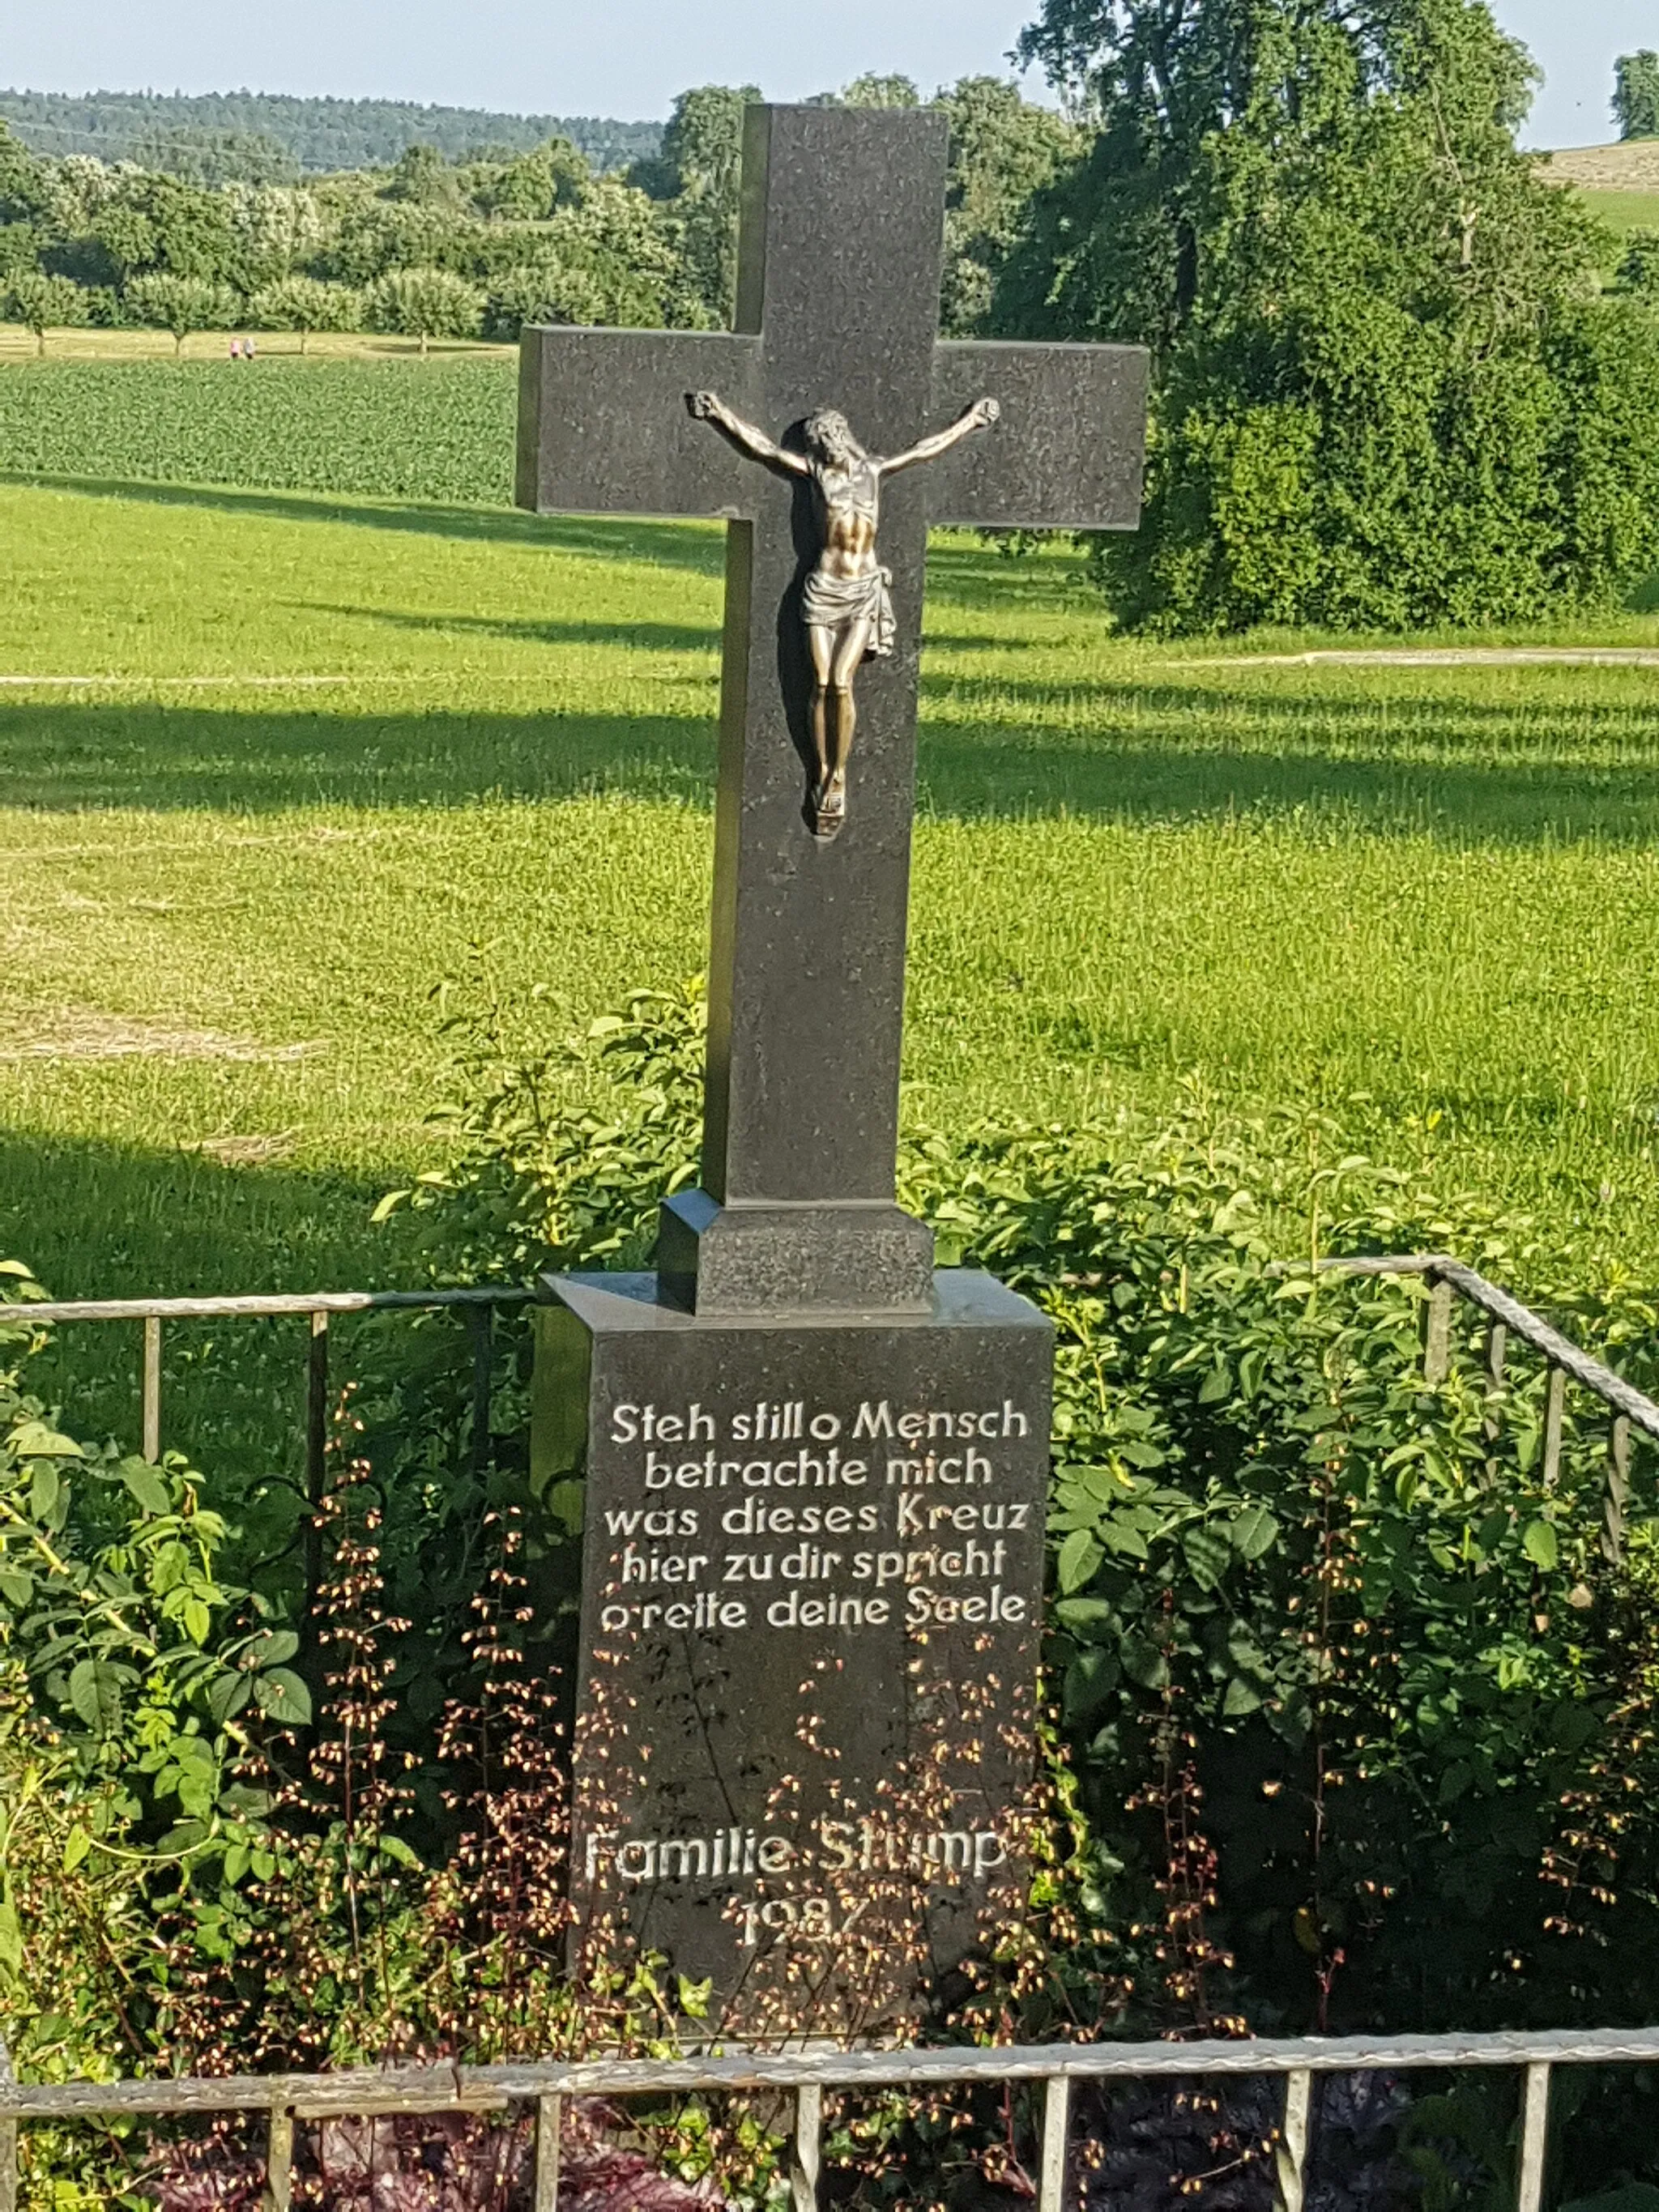 Photo showing: Inschrift: Steh still o Mensch betrachte mich was dieses Kreuz hier zu dir spricht o rette deine Seele
Erbaut: 1987